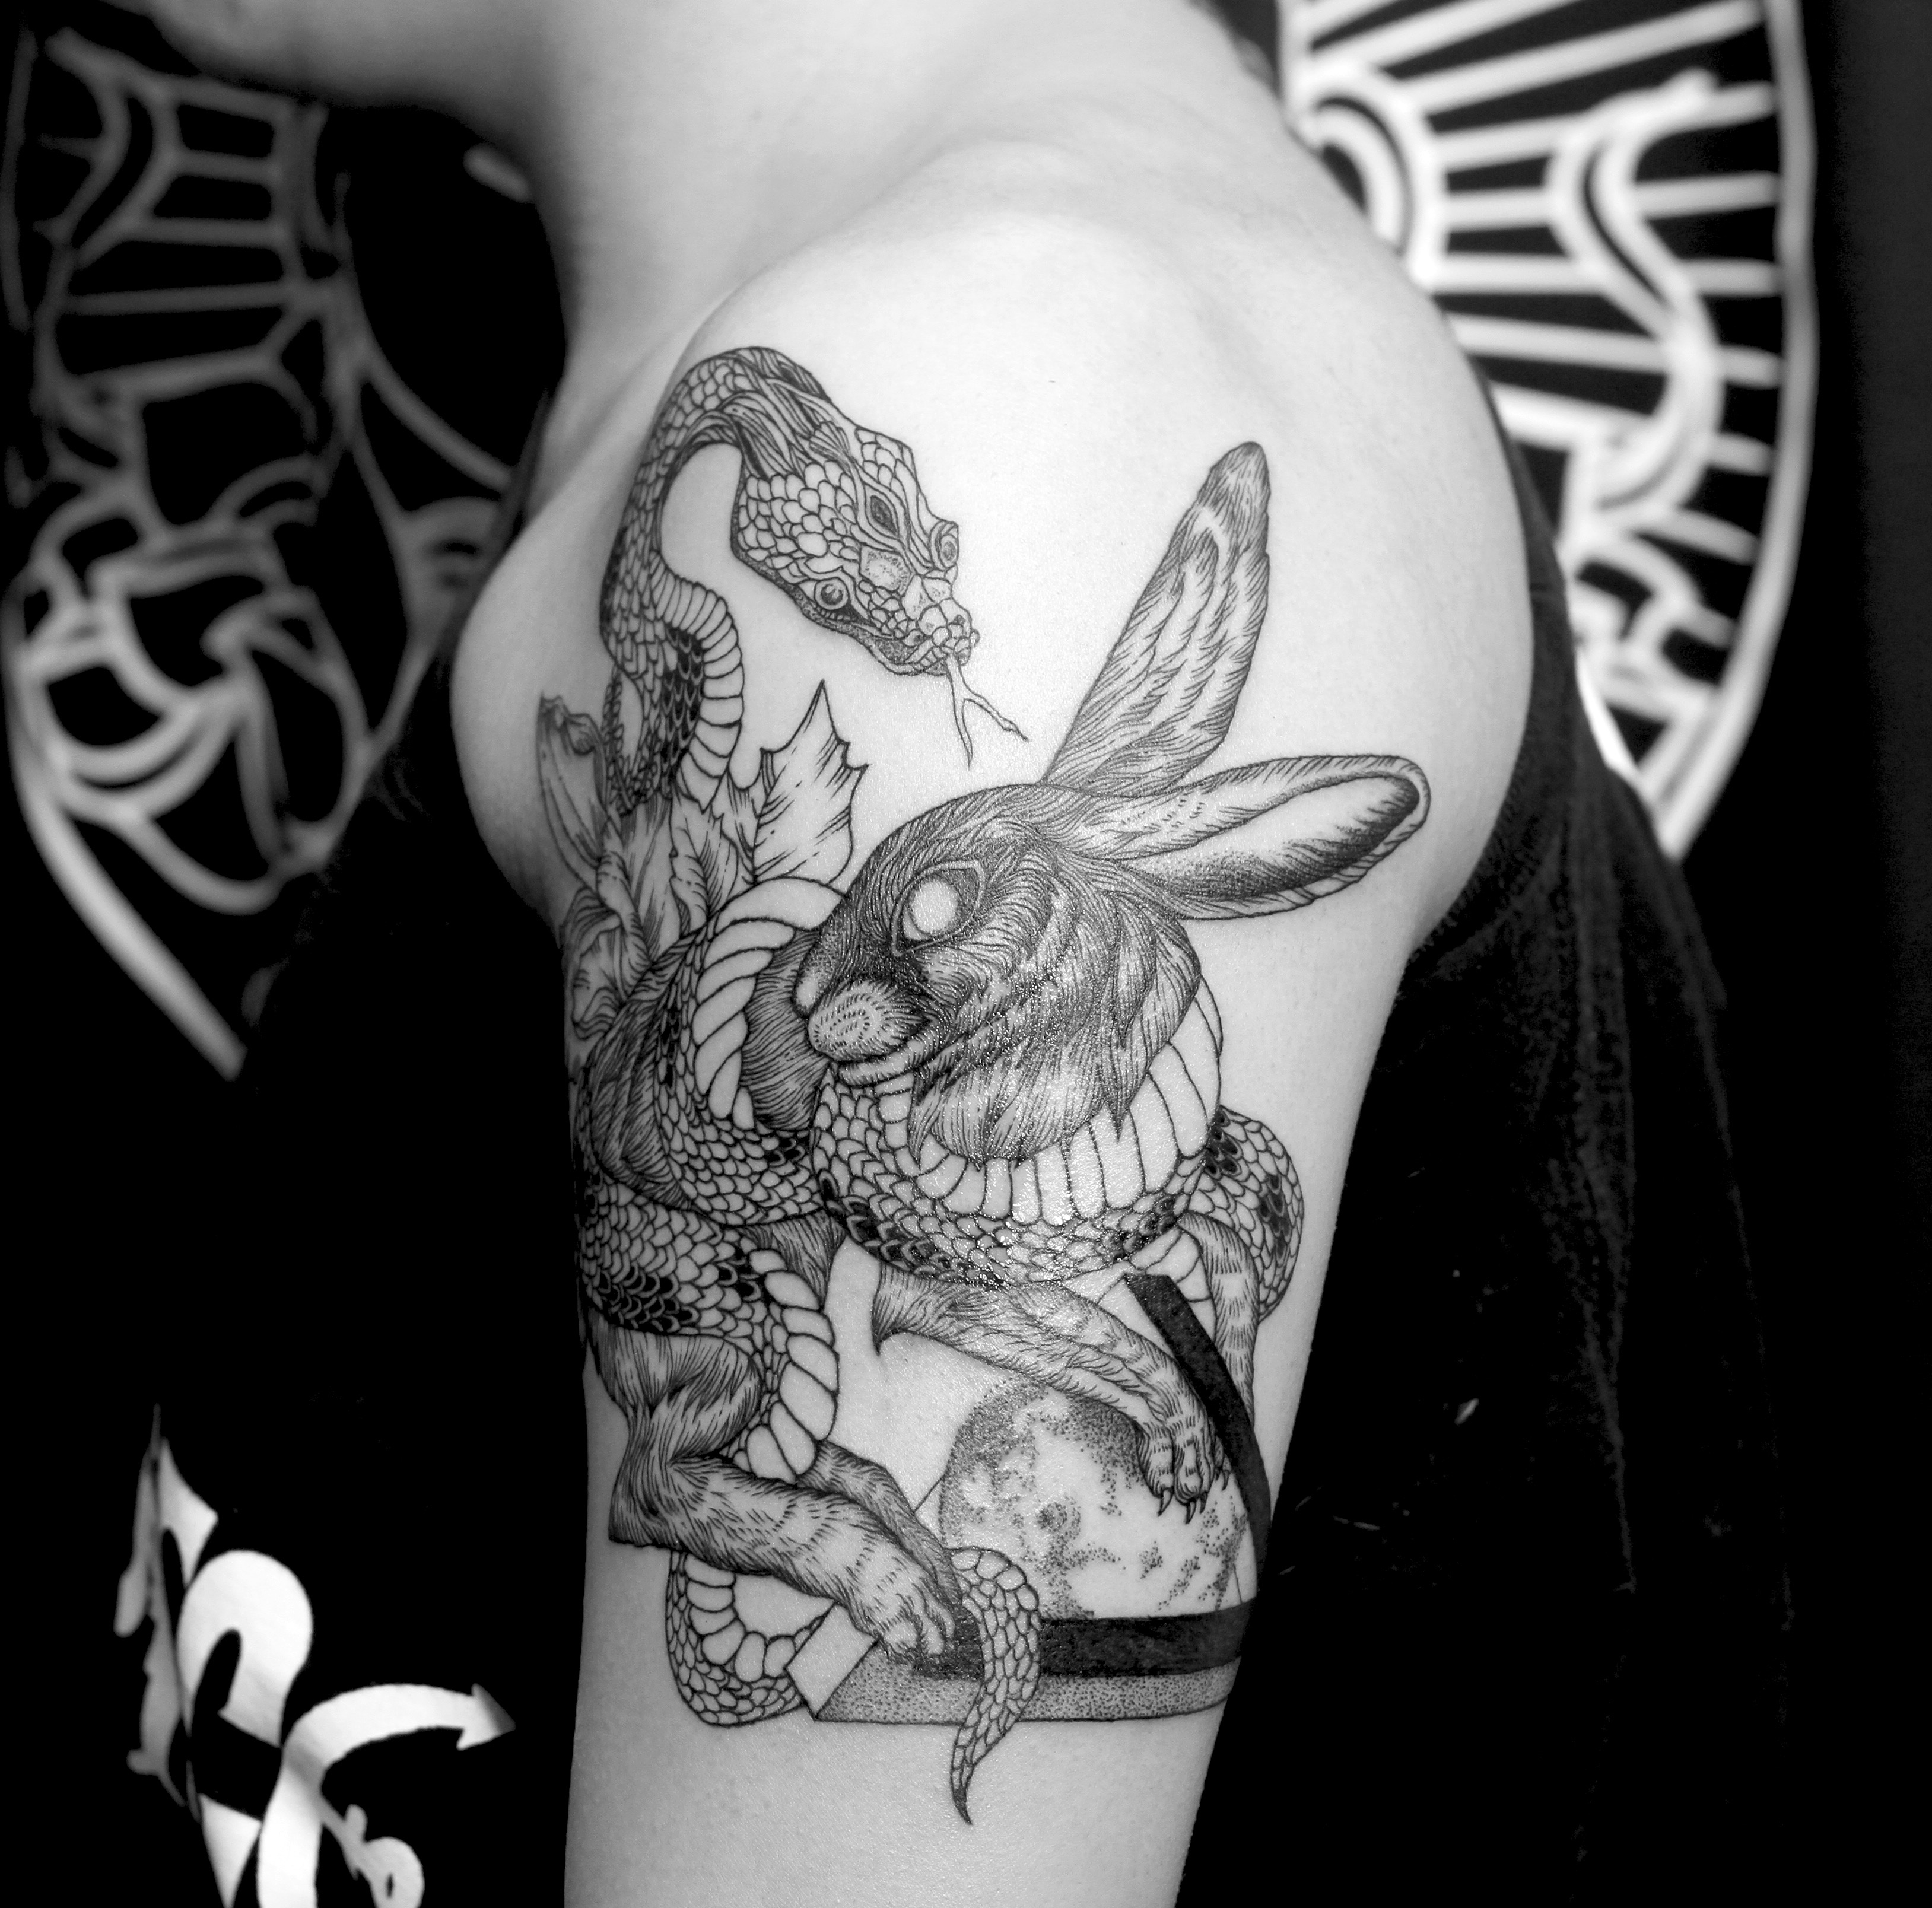 蛇盘兔花的纹身图案图片